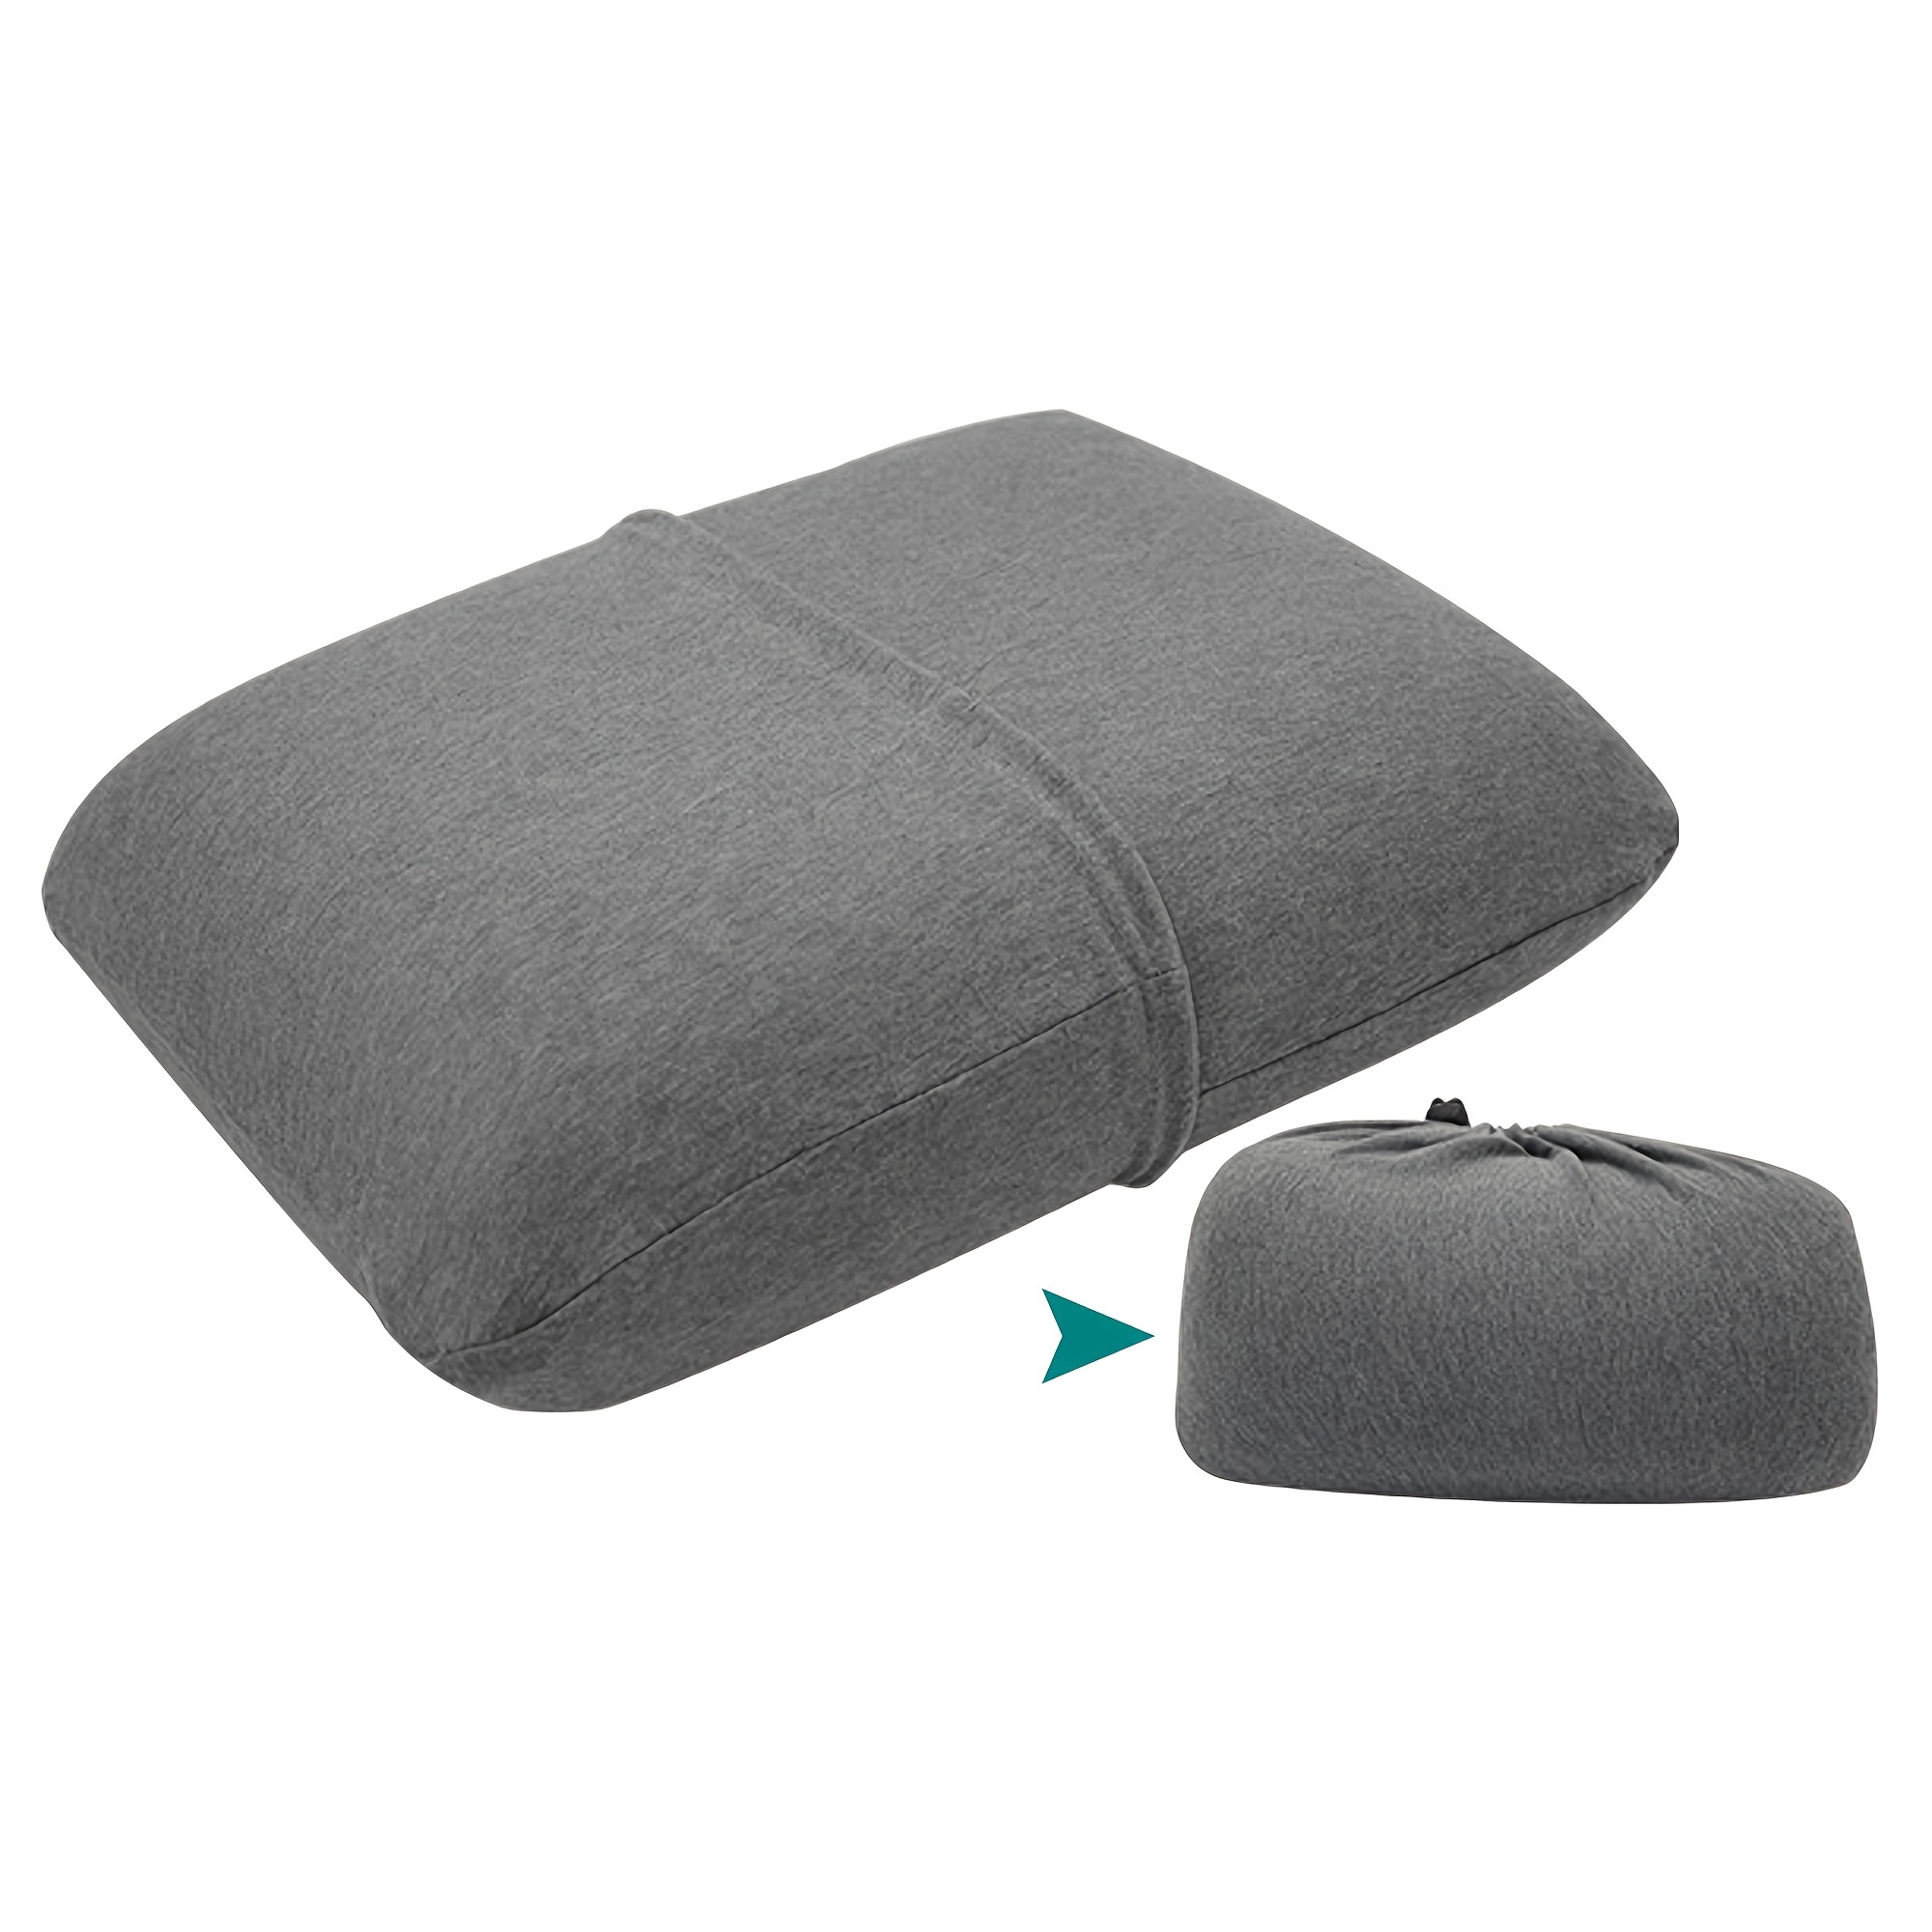 BEDSUM Paquete de 2 almohadas pequeñas, minialmohadas de microfibra de 11 x  7 pulgadas para niños pequeños, viajes, mascotas, suaves y lavables a